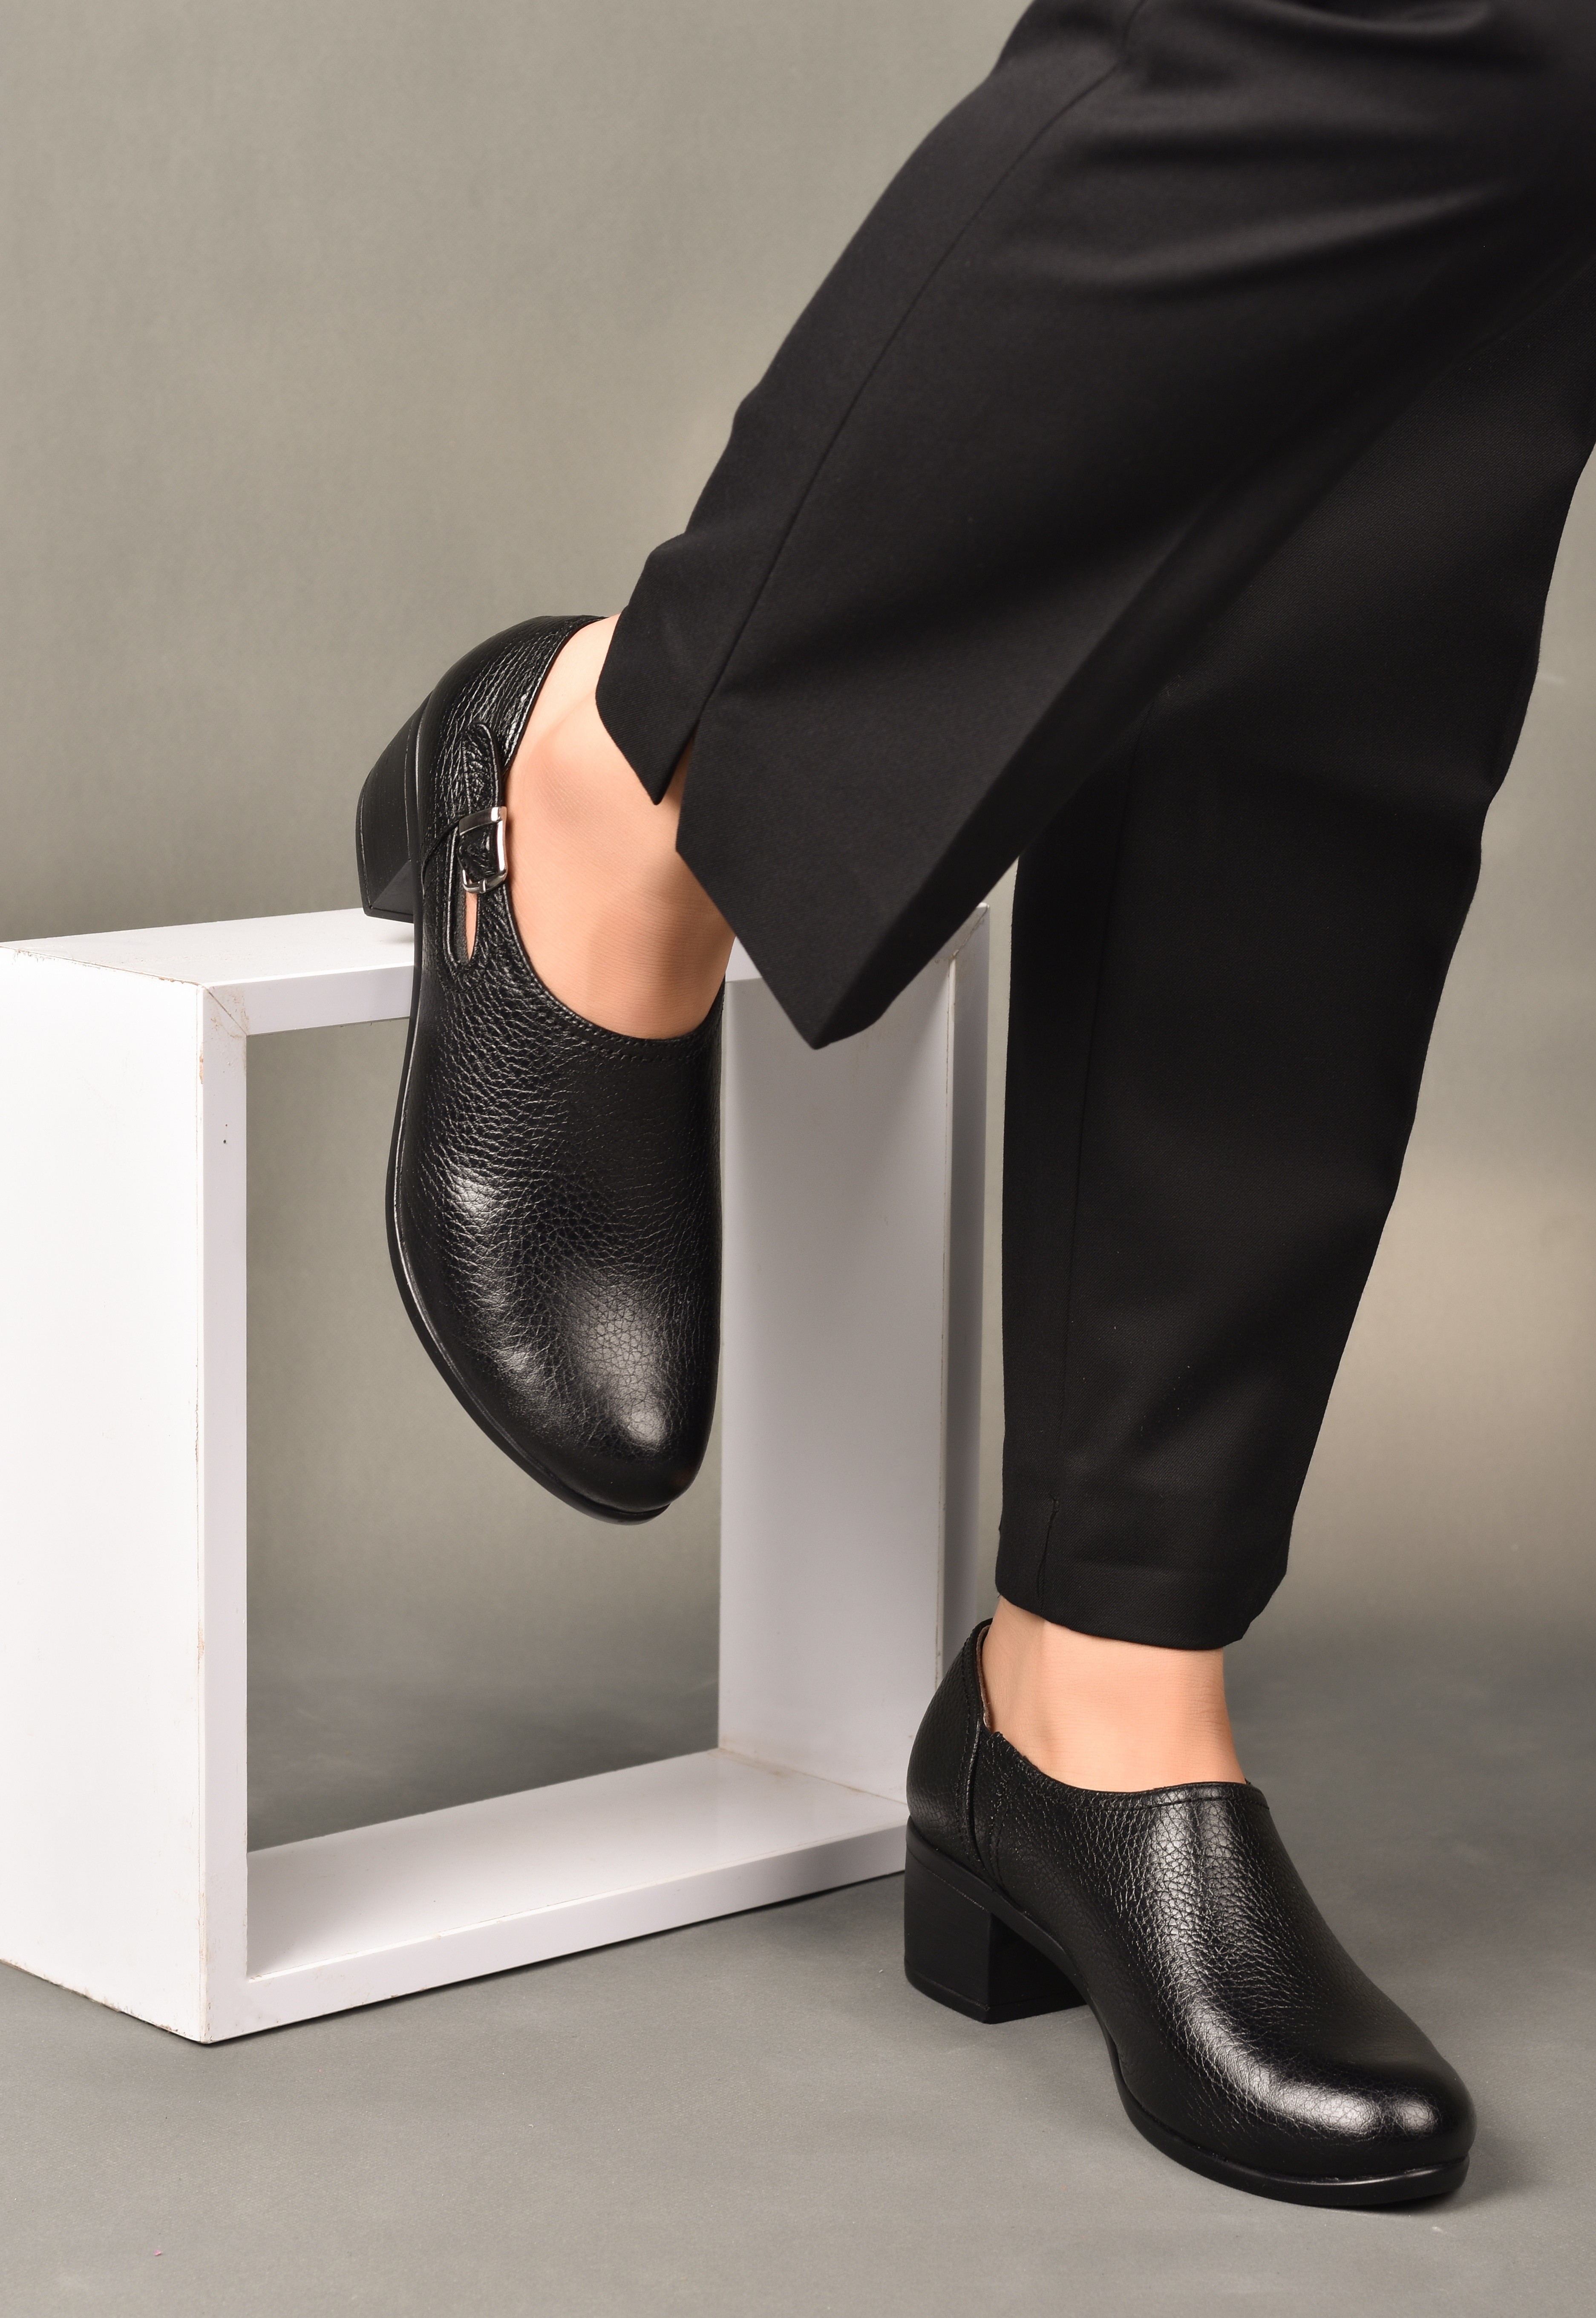 خرید آنلاین کفش طبی پاشنه دار زنانه روشن مدل 01-4030